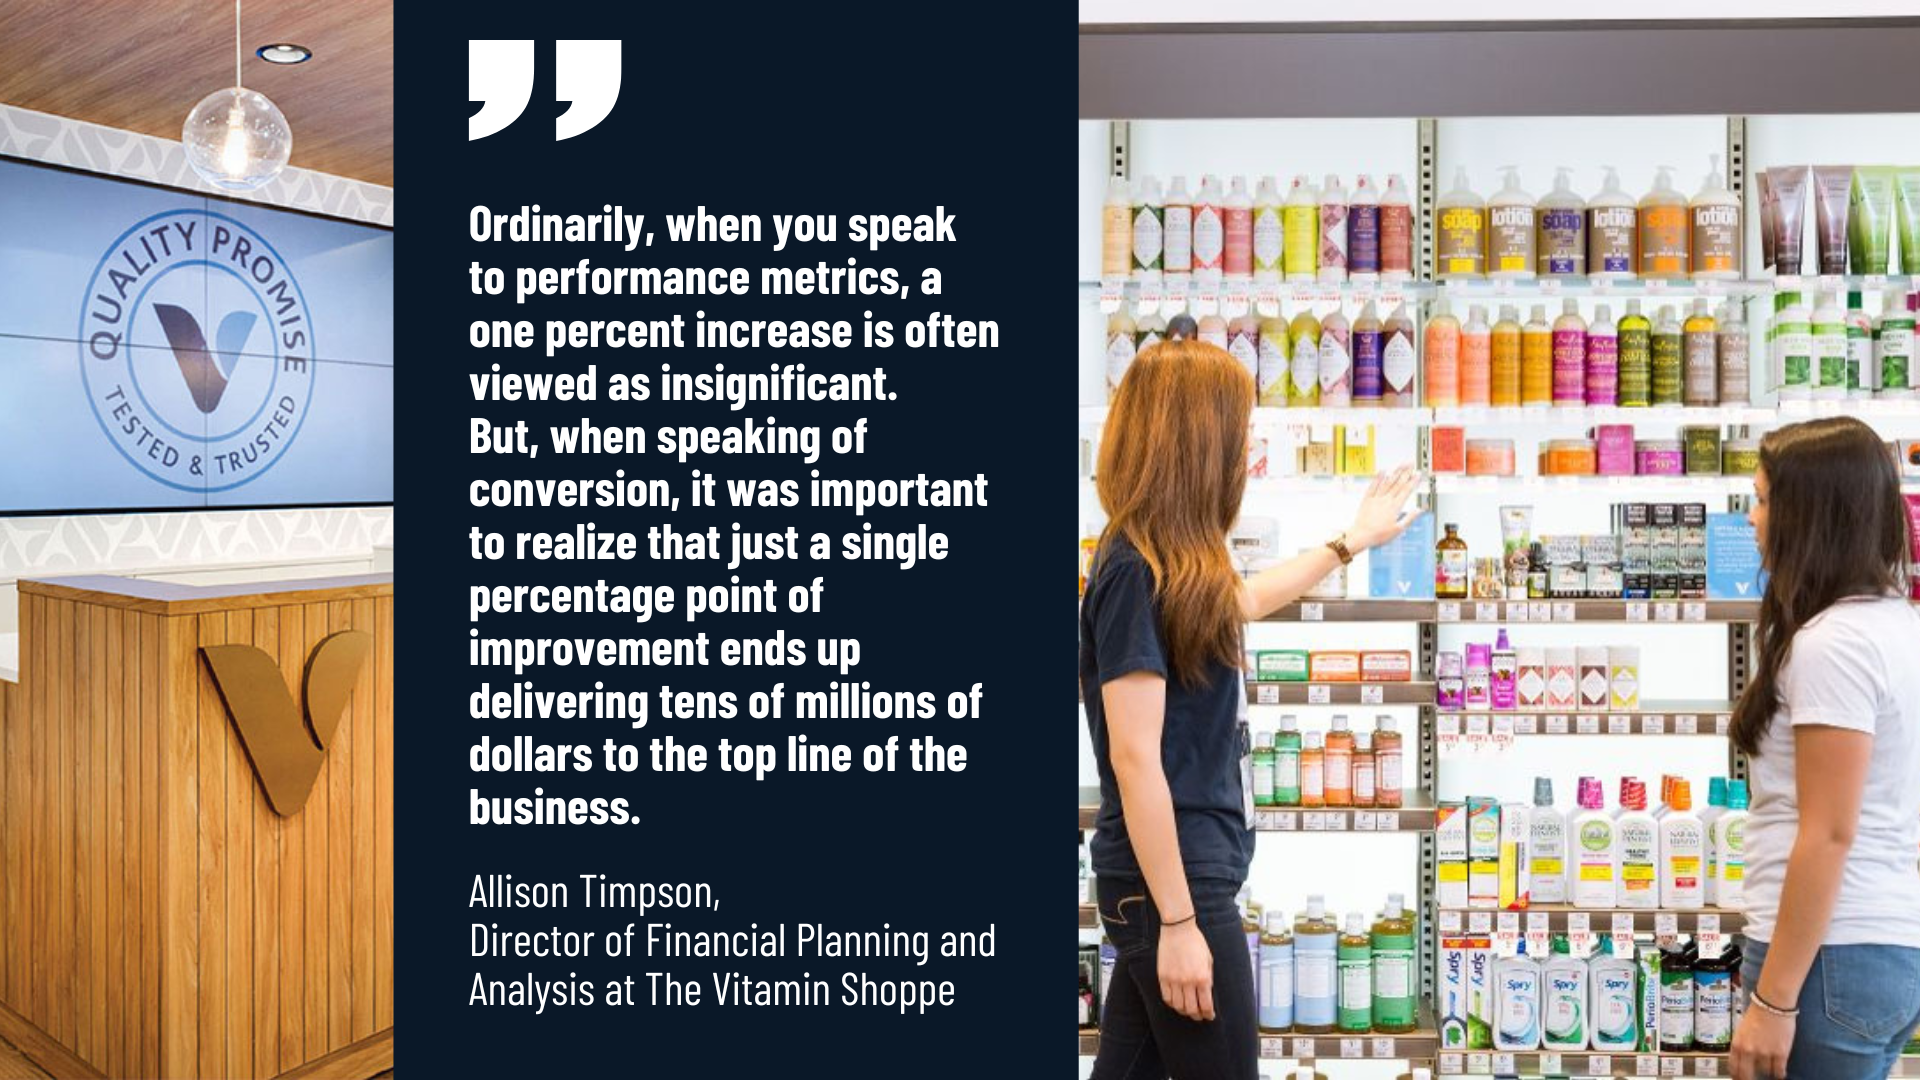 The Vitamin Shoppe case study quote 